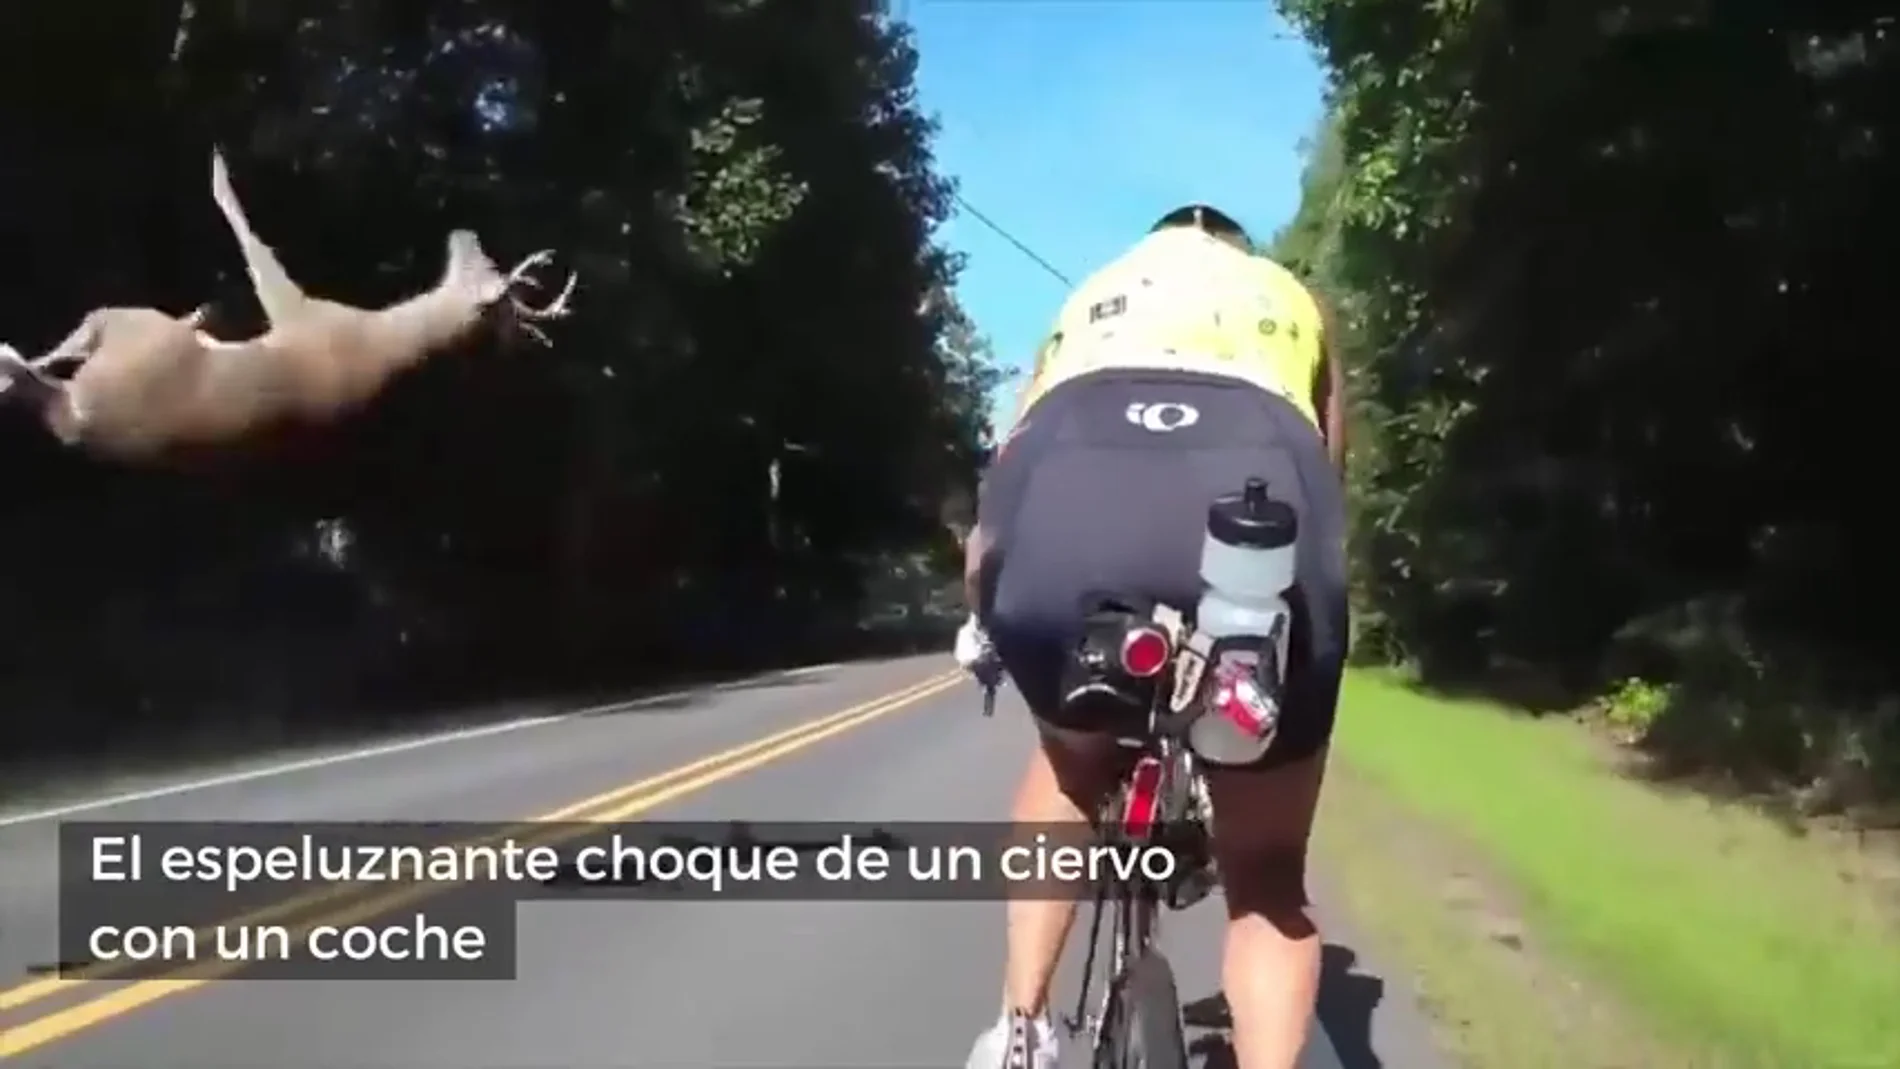 Unos ciclistas graban el brutal choque de un ciervo con un coche en plena carretera